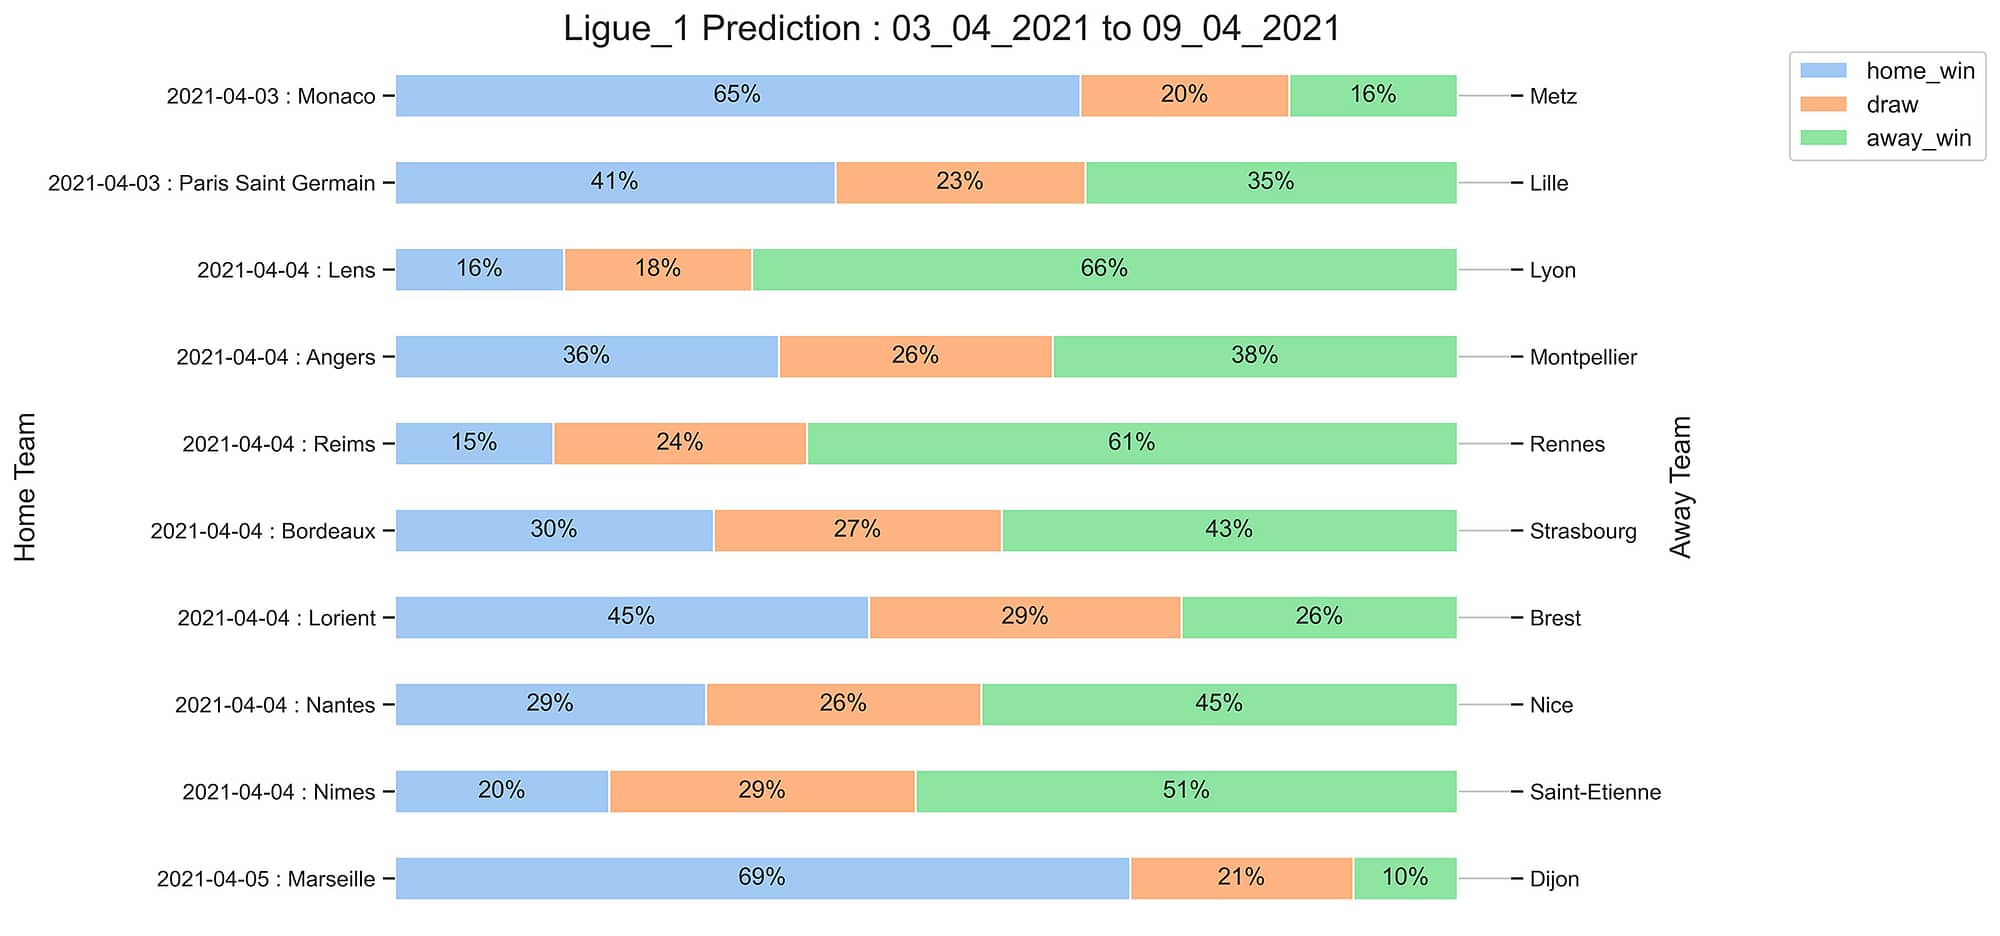 Ligue_1_Prediction 03_04_2021